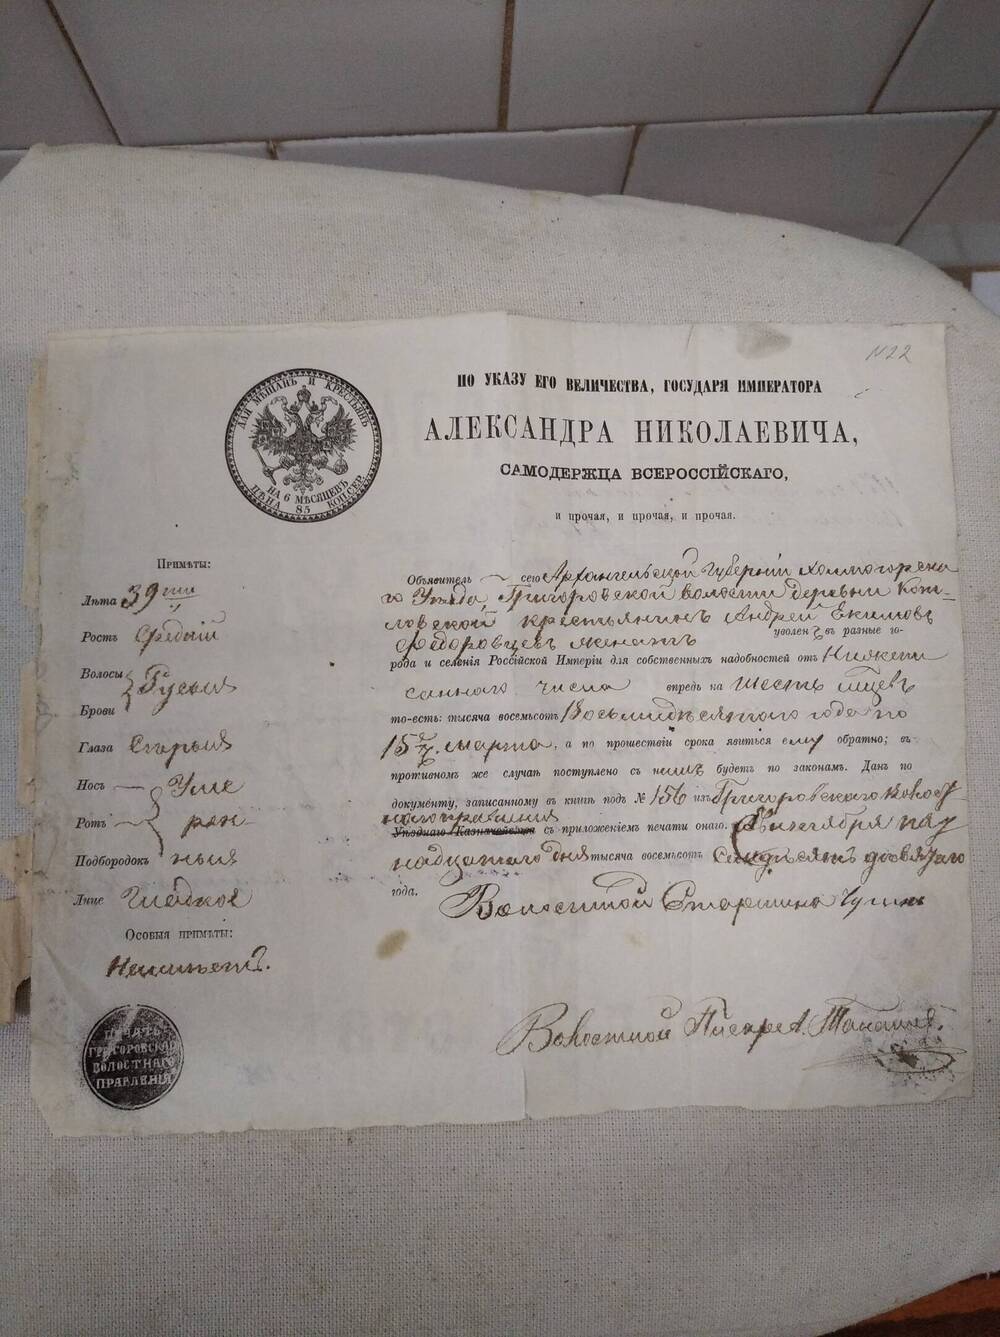 Паспорт образца 1876 года объявителю Андрей Екимов Федоровцев.